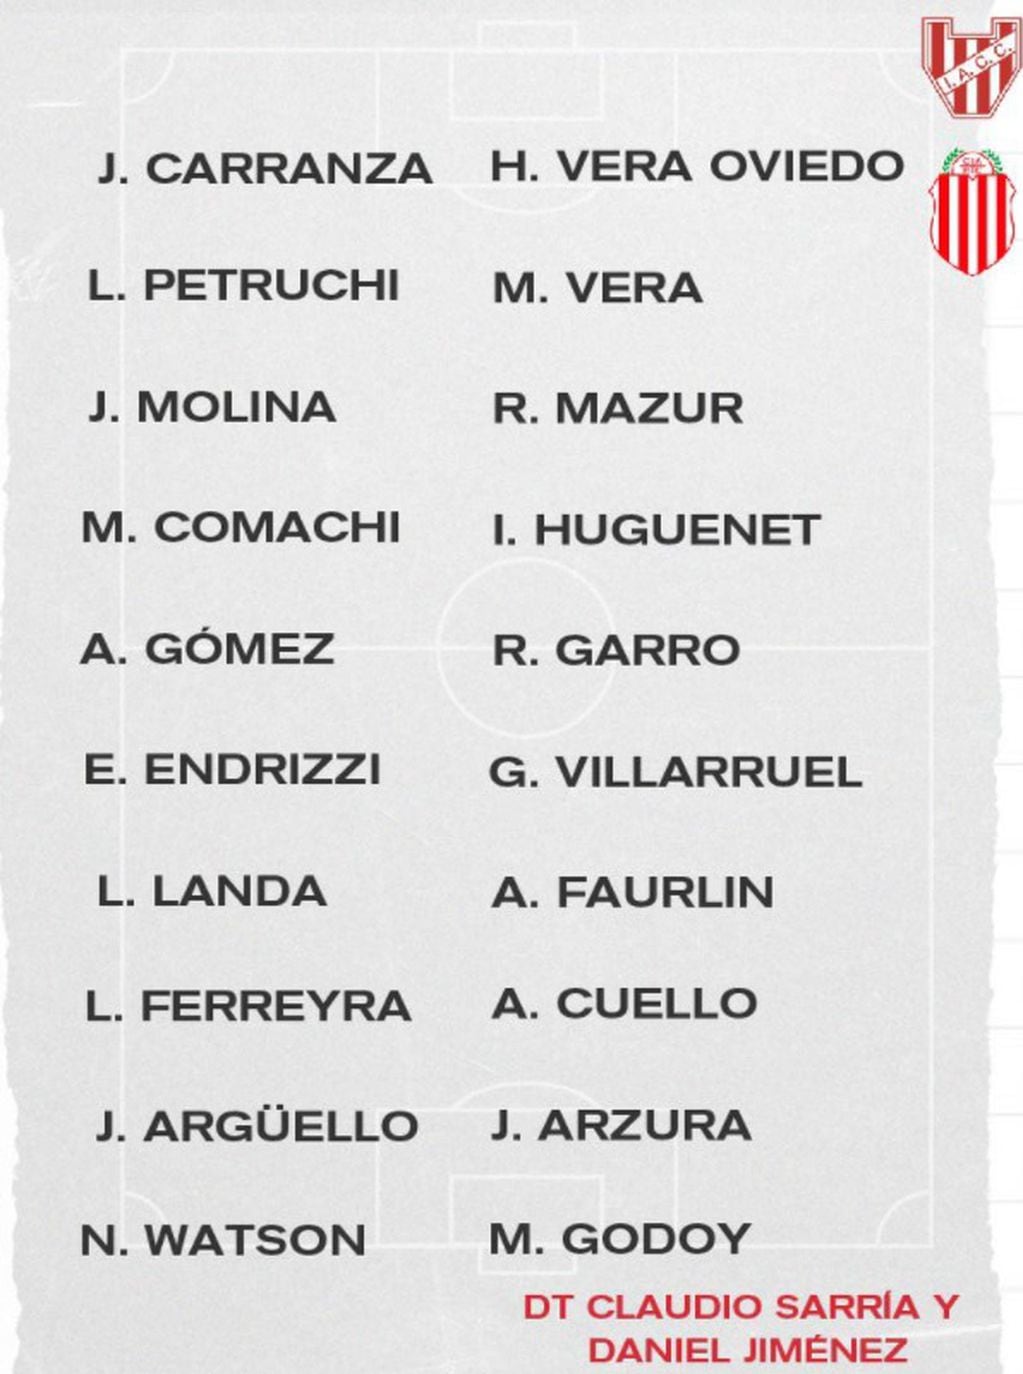 La lista de concentrados de Instituto, con el regreso de Leonardo Ferreyra tras un desgarro y de Alejandro Faurlin, afuera por cinco amarillas.